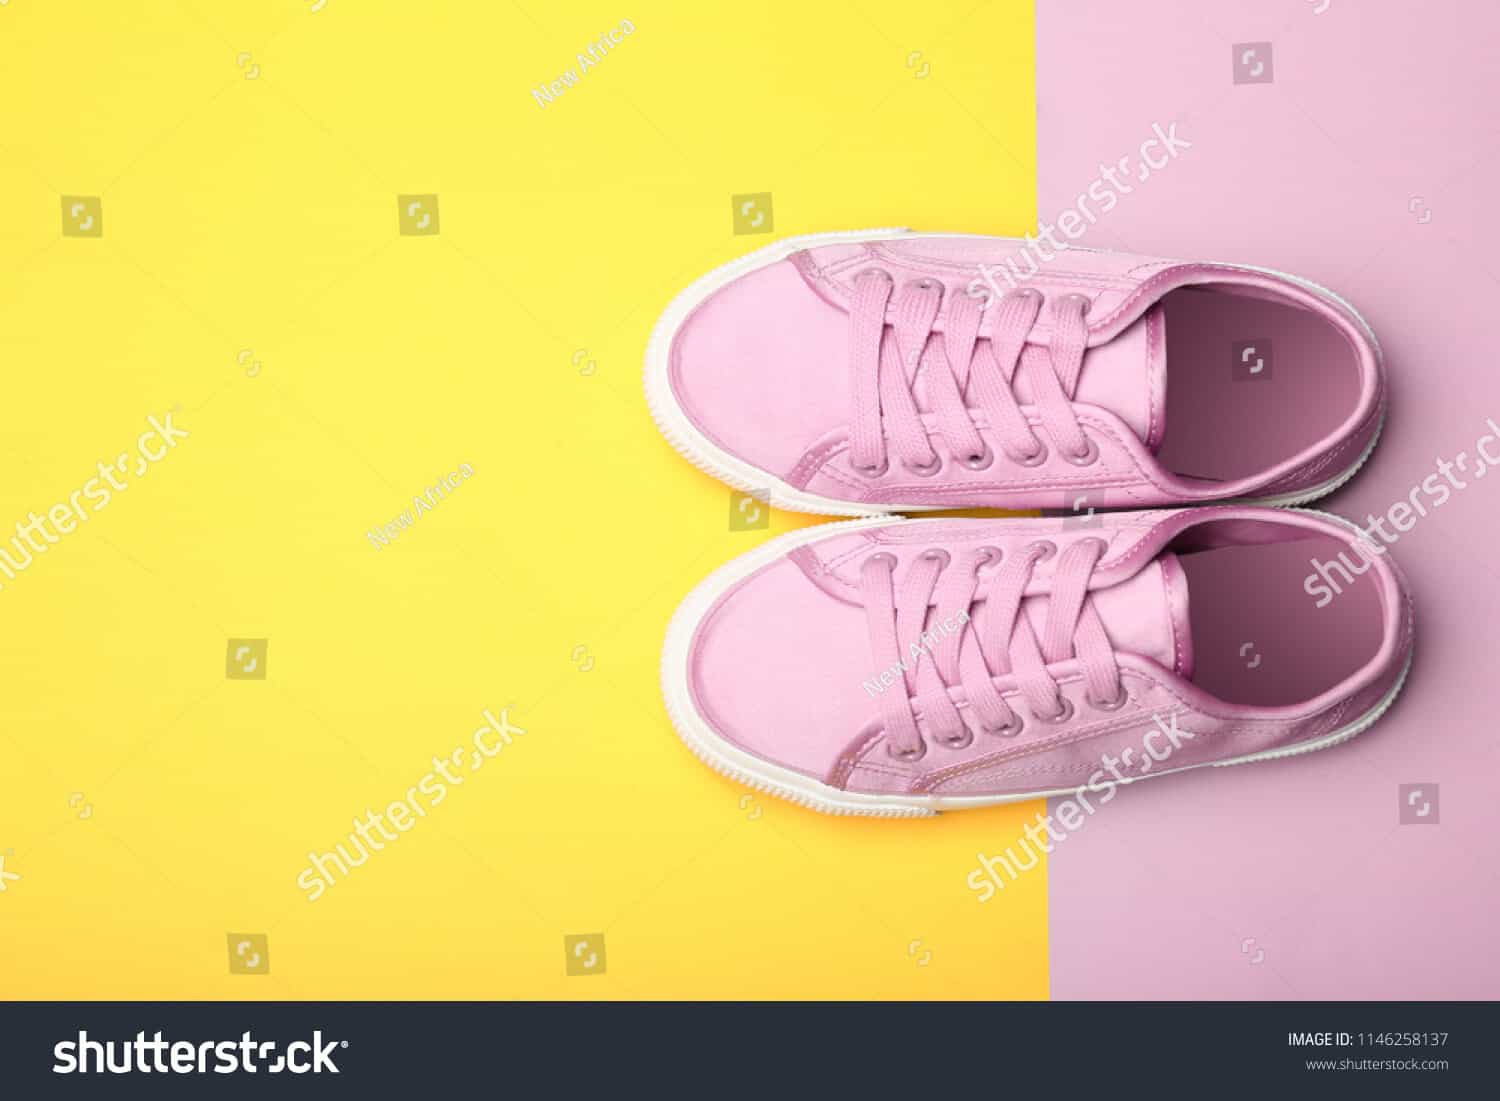 113 ngàn hình ảnh giày trẻ em chất lượng cao trên Shutterstock